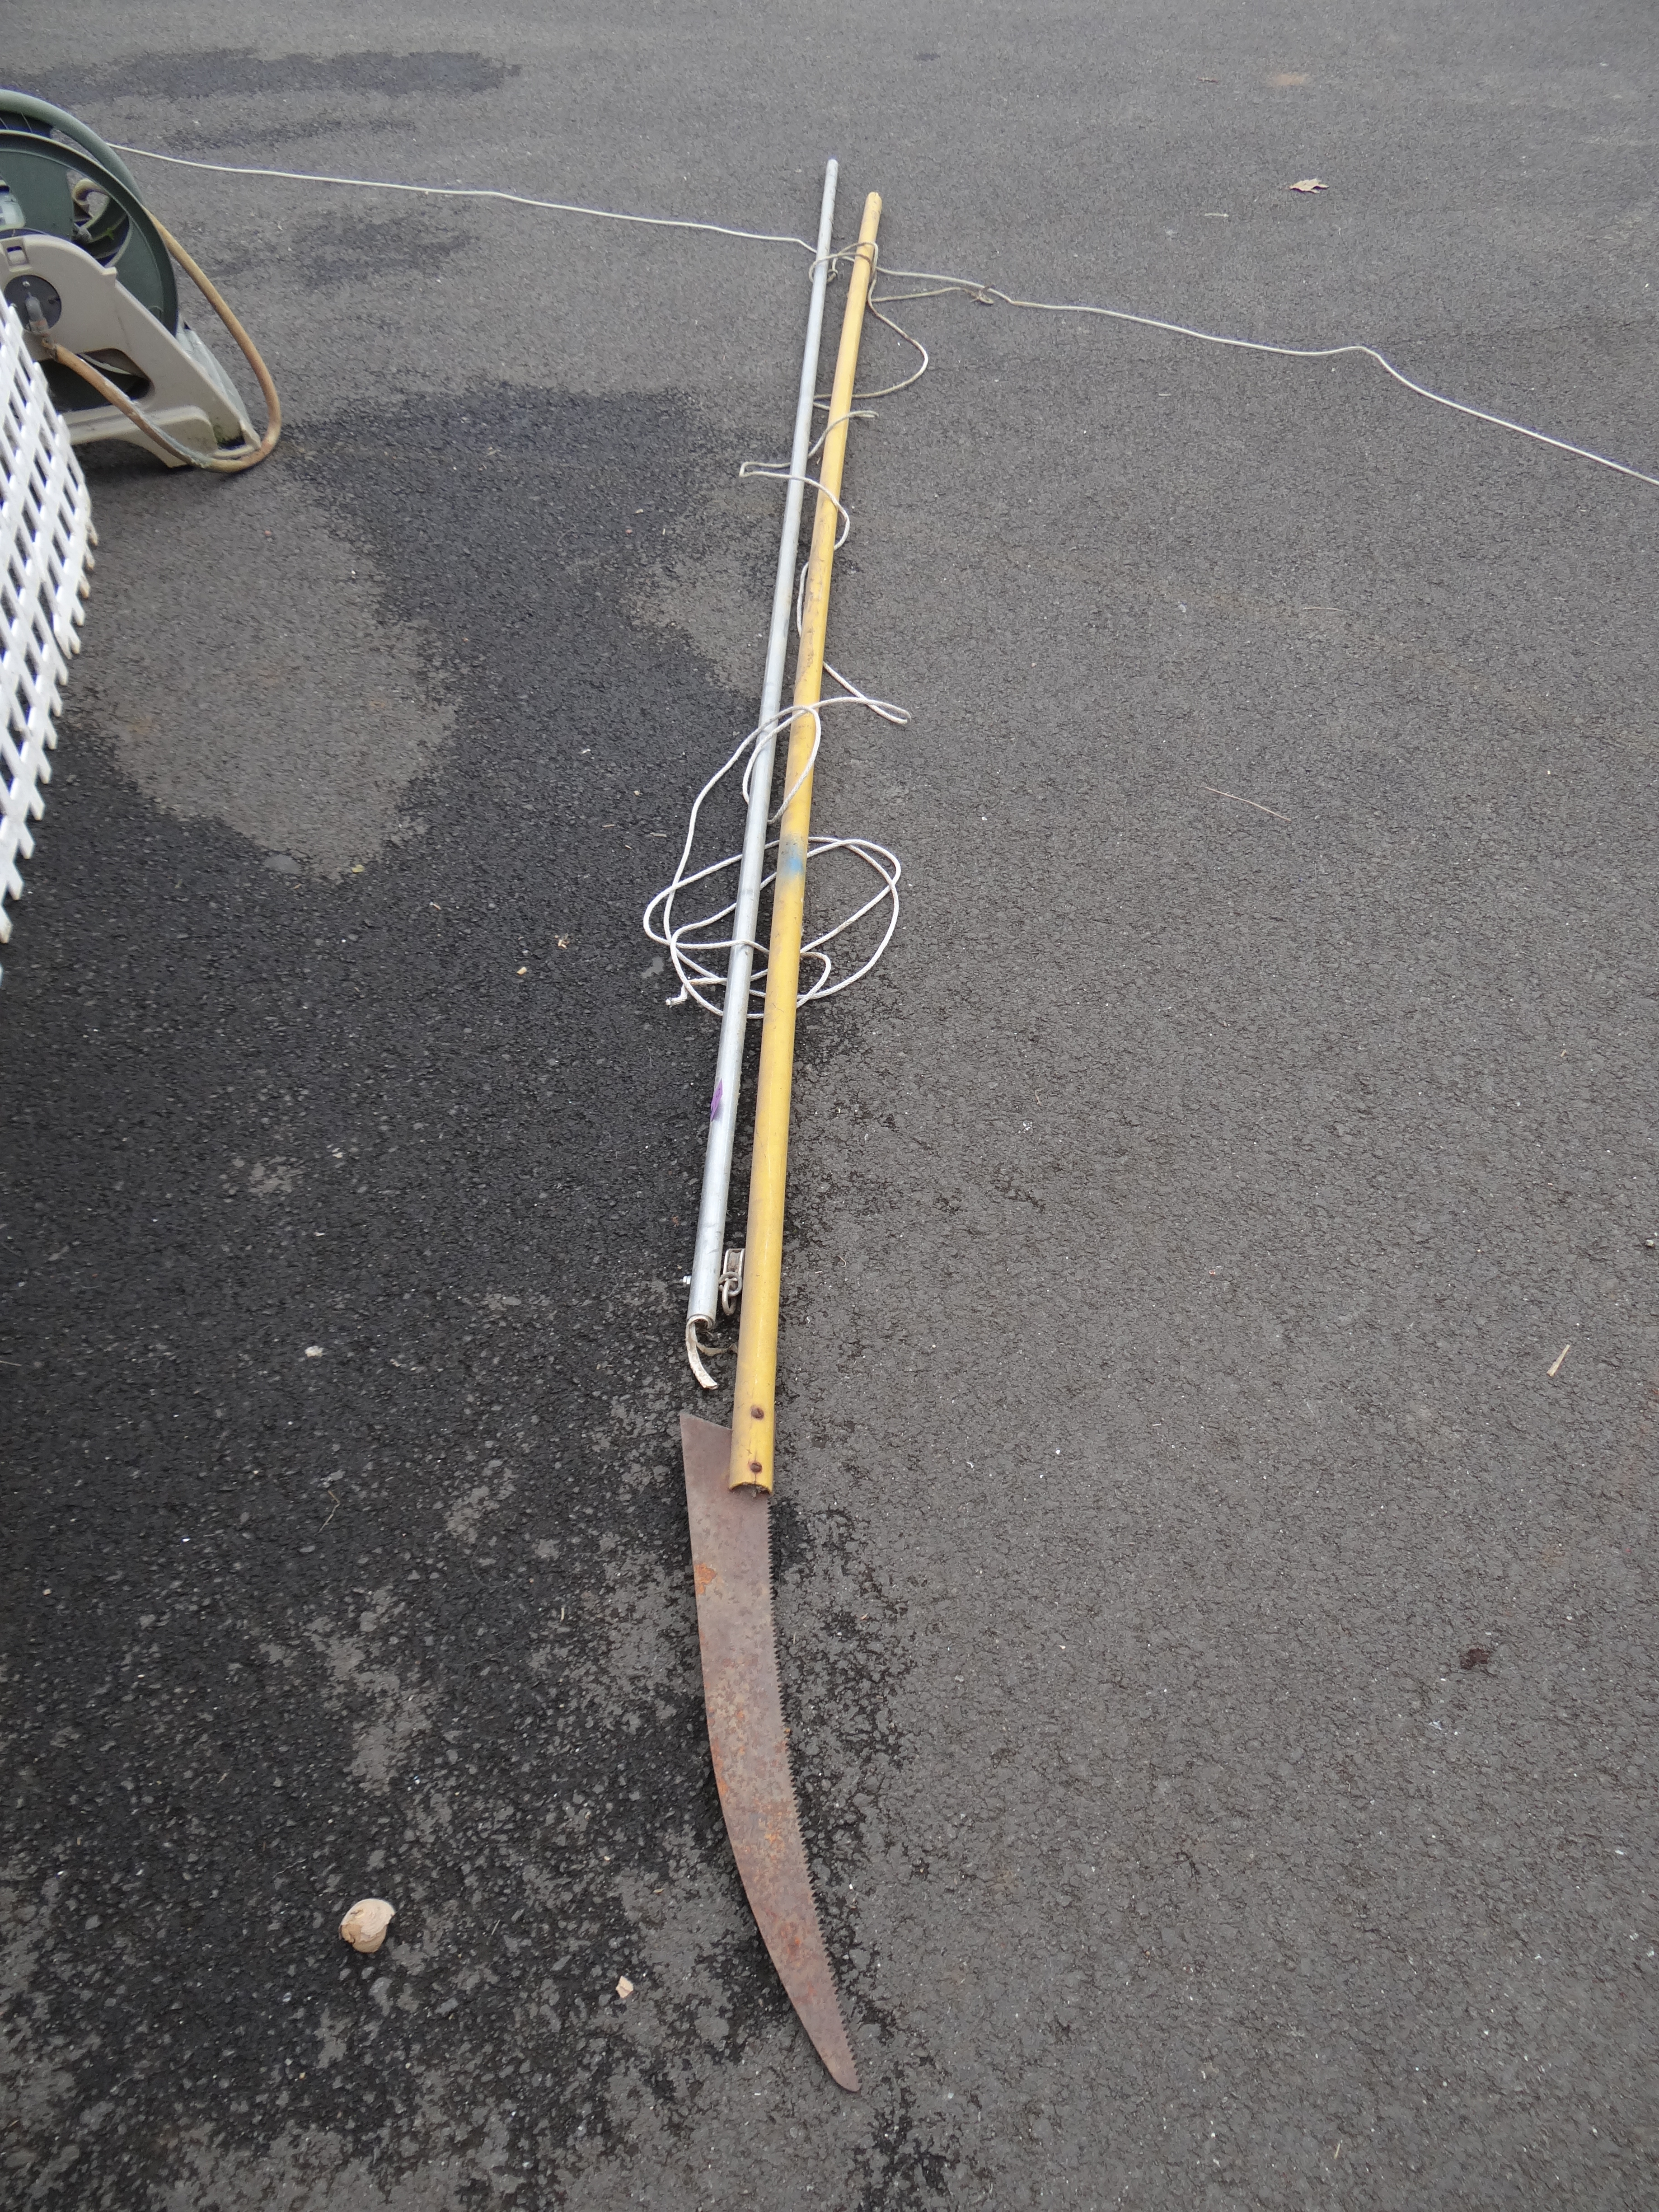 70-Long Pole Saw w/ Extension Pole